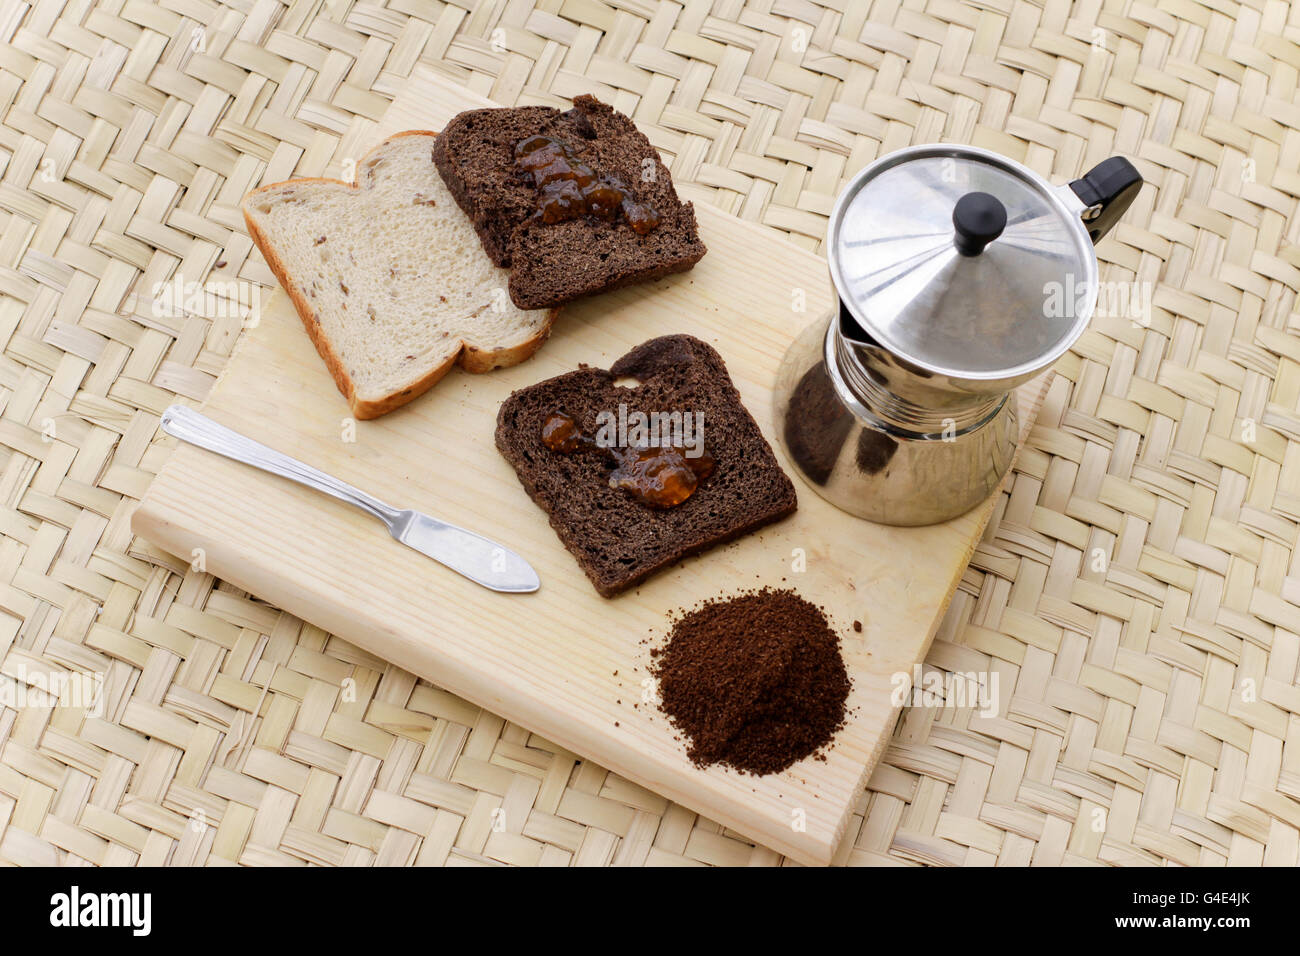 Fotografía de unas tostadas con mermelada y otros ingredientes Foto de stock